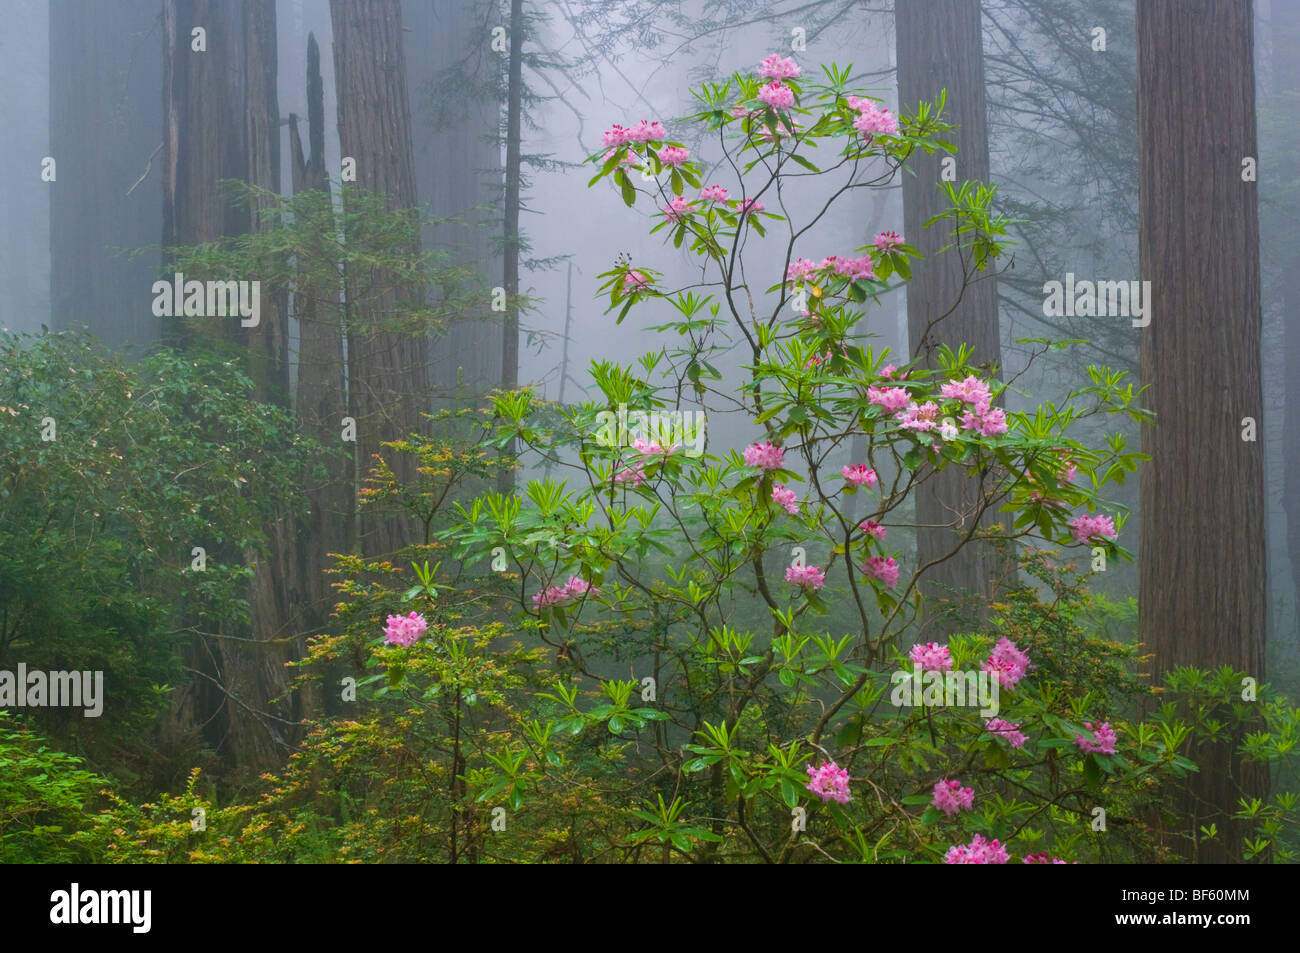 Wilden Rhododendron-Blumen in voller Blüte, Mammutbäume und Nebel im Wald, Redwood National Park, Kalifornien Stockfoto